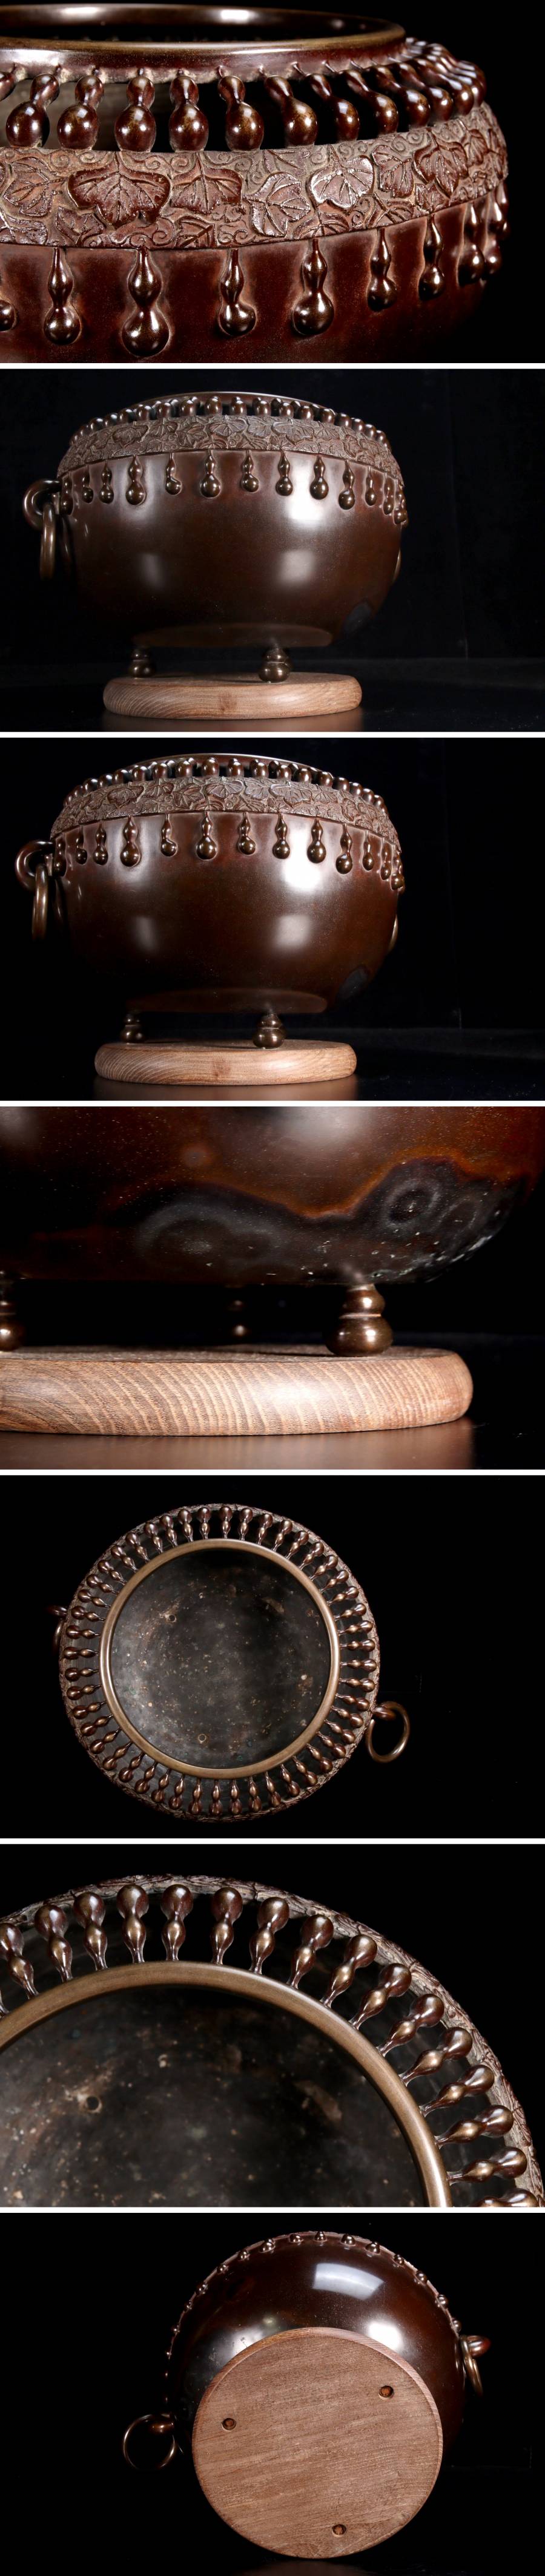 魅力的な価格 35.5cm 瓢箪透蓋火鉢 銅製 中川浄益造 古美術品 。◇錵